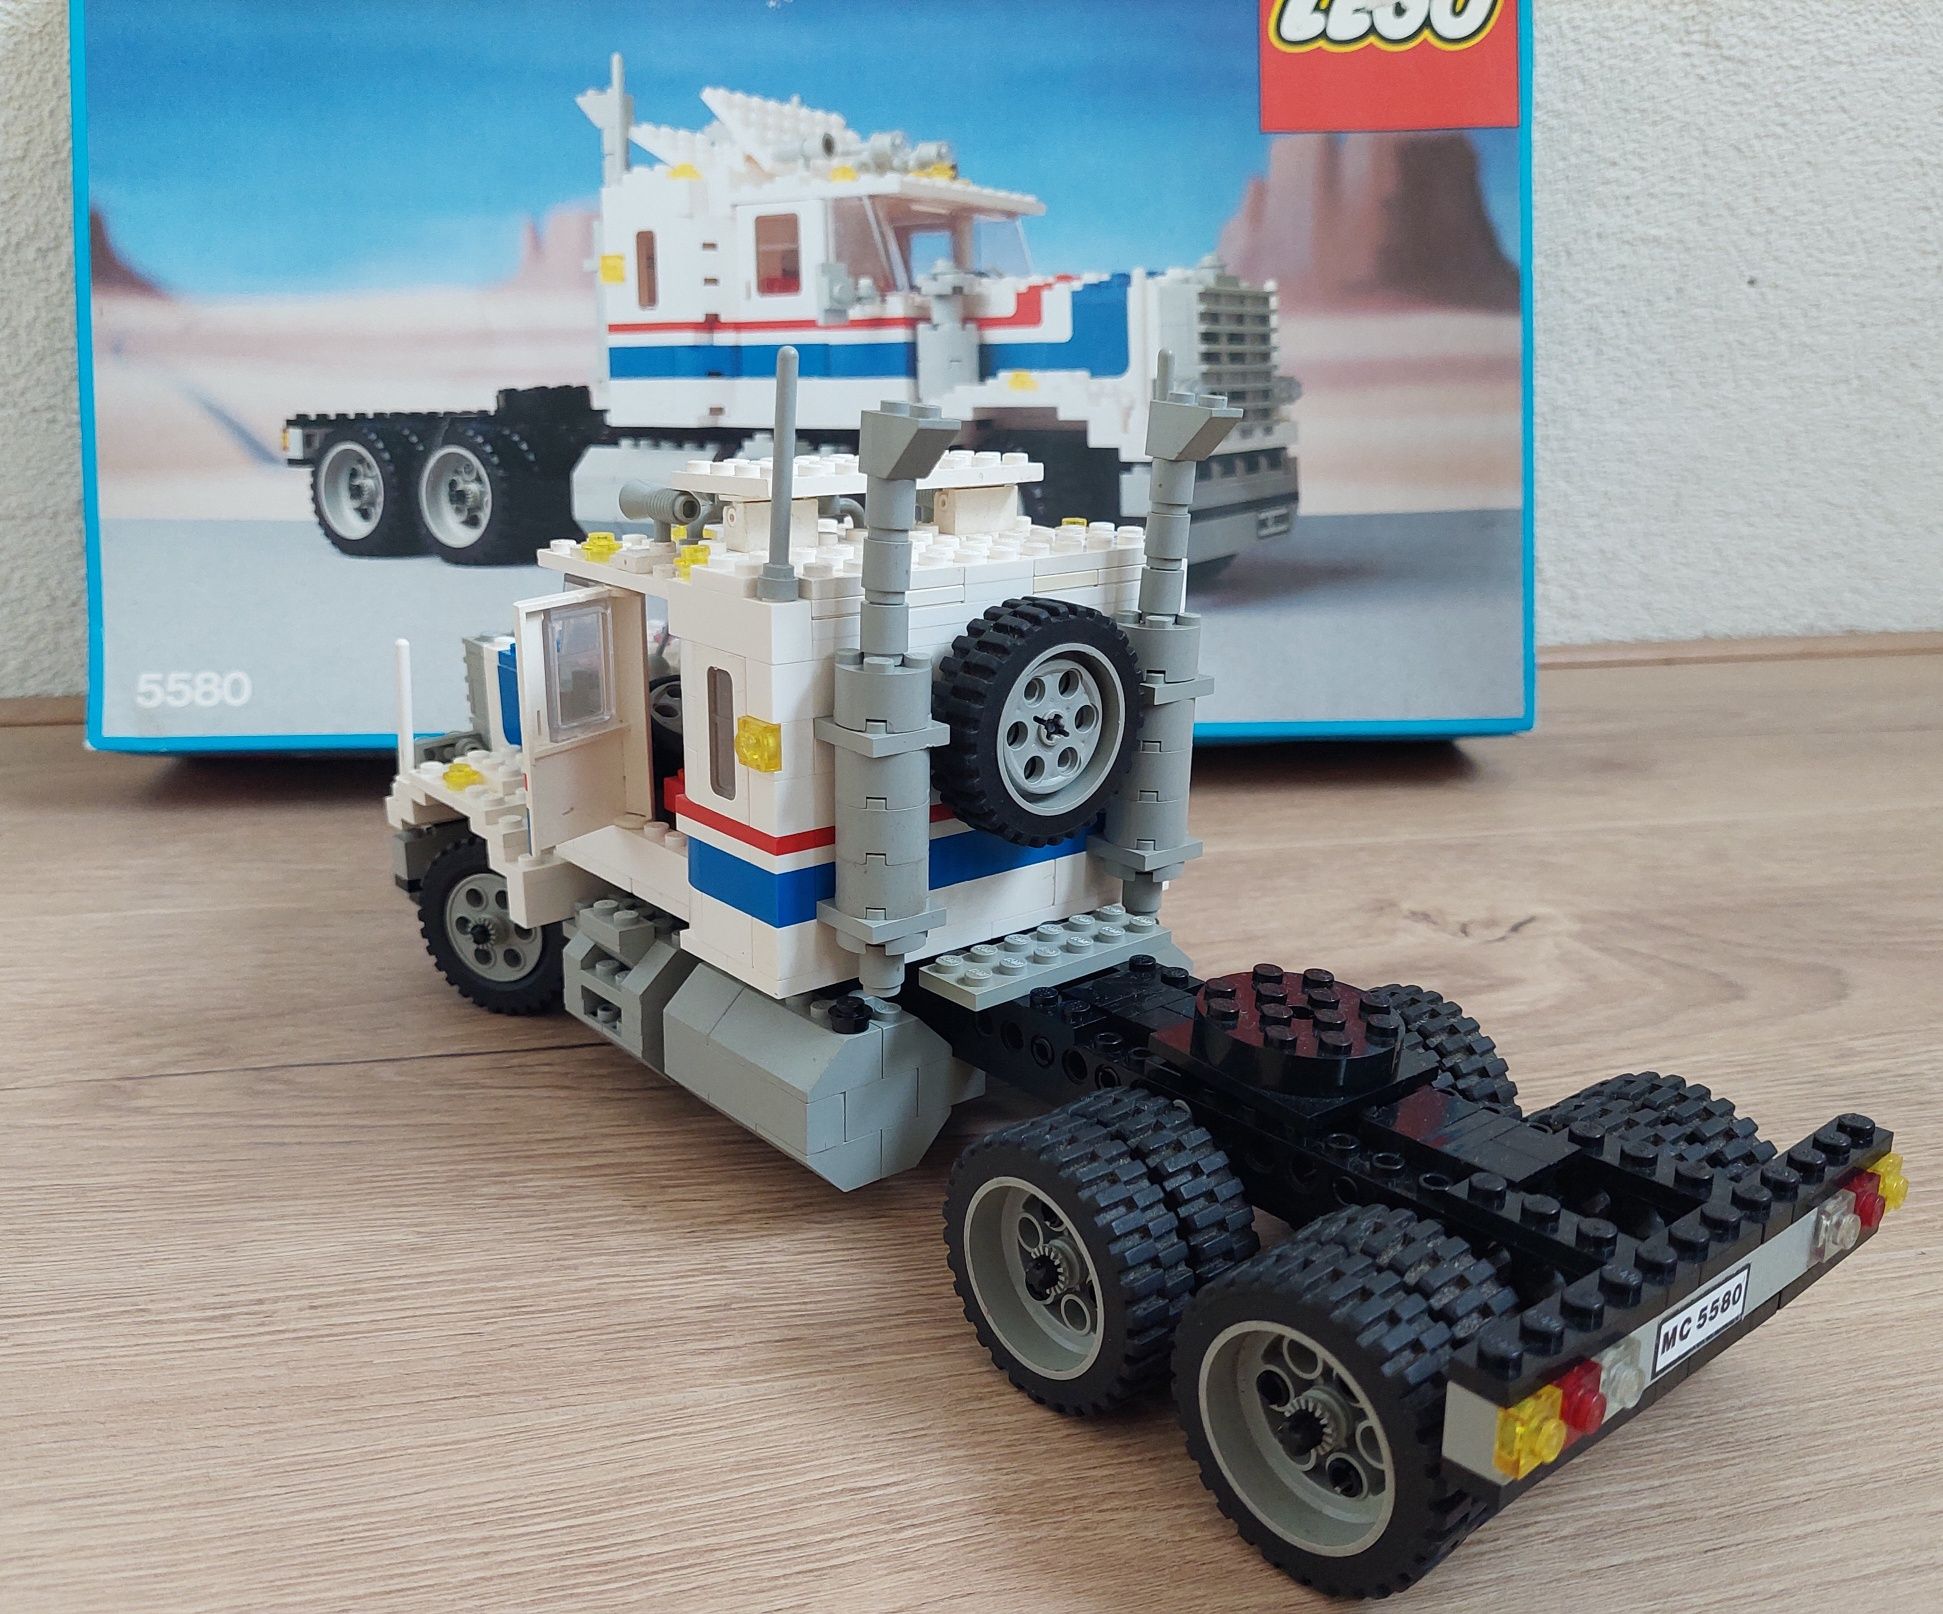 Zestaw Lego 5580 pudełko instrukcja